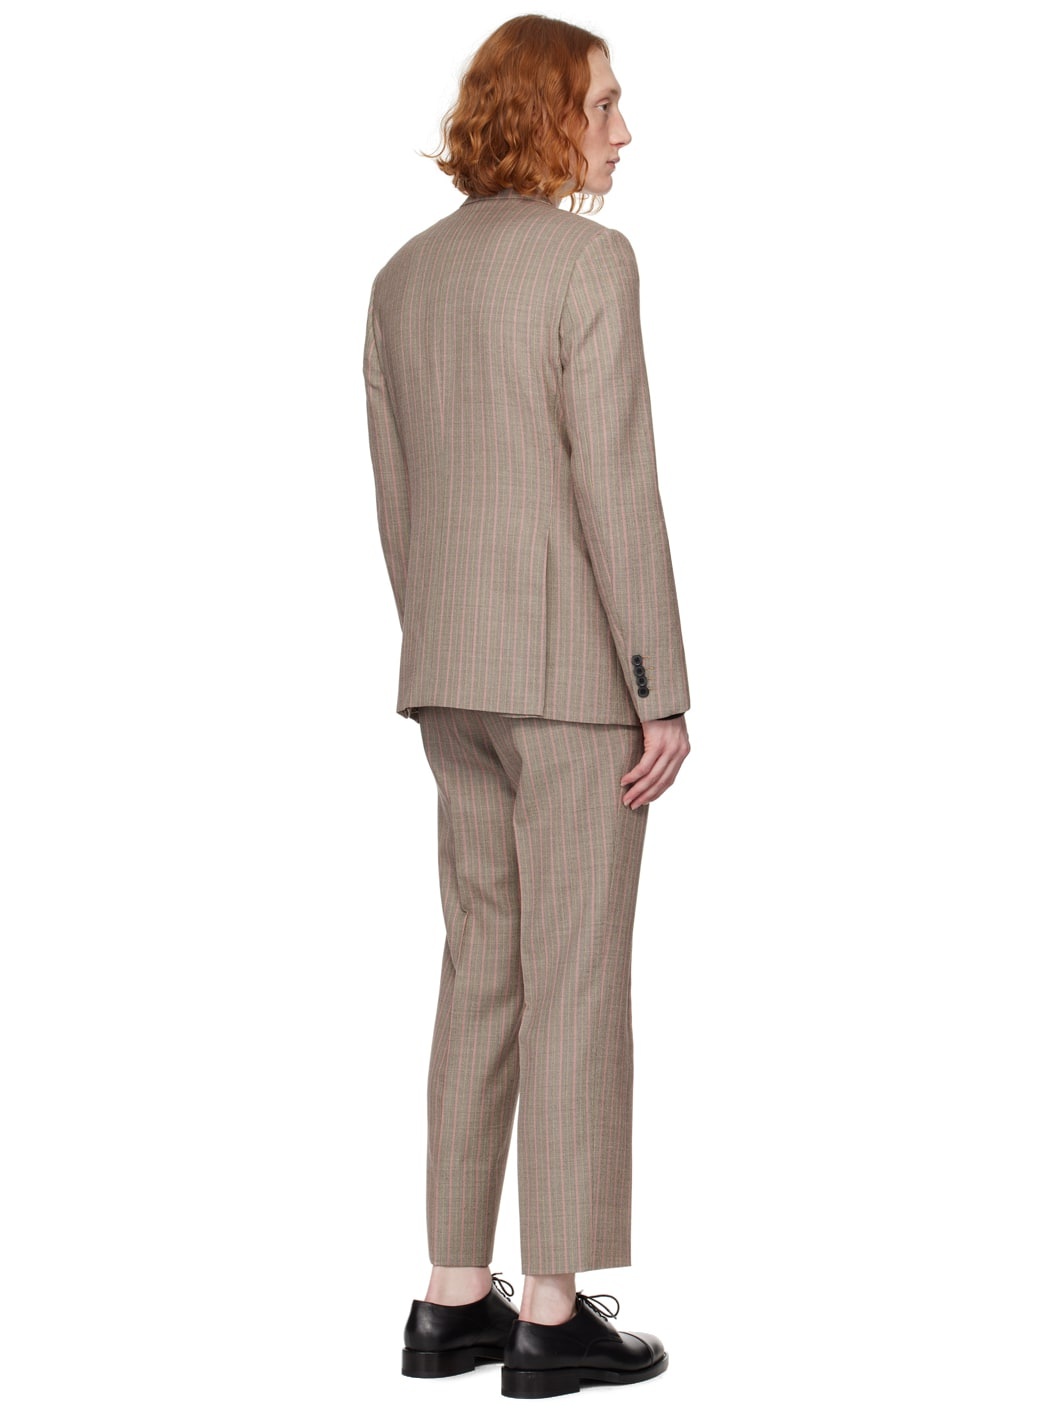 Brown Slim Fit Suit - 3